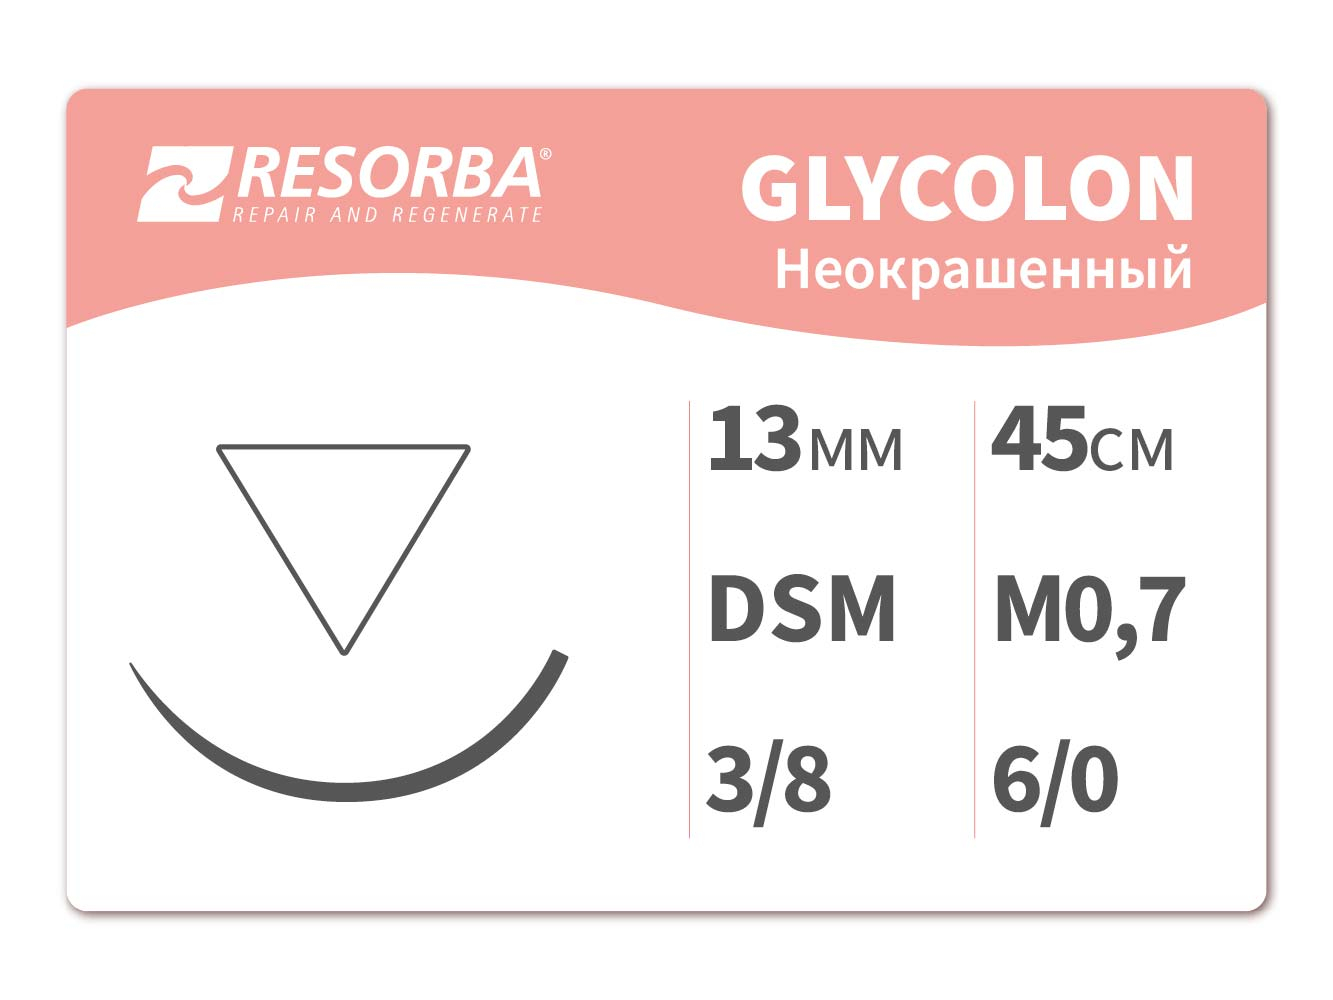 41504 Гликолон неокрашенный  М0.7, (6/0), 45см DSM 13, Ресорба/RESORBA (Германия)